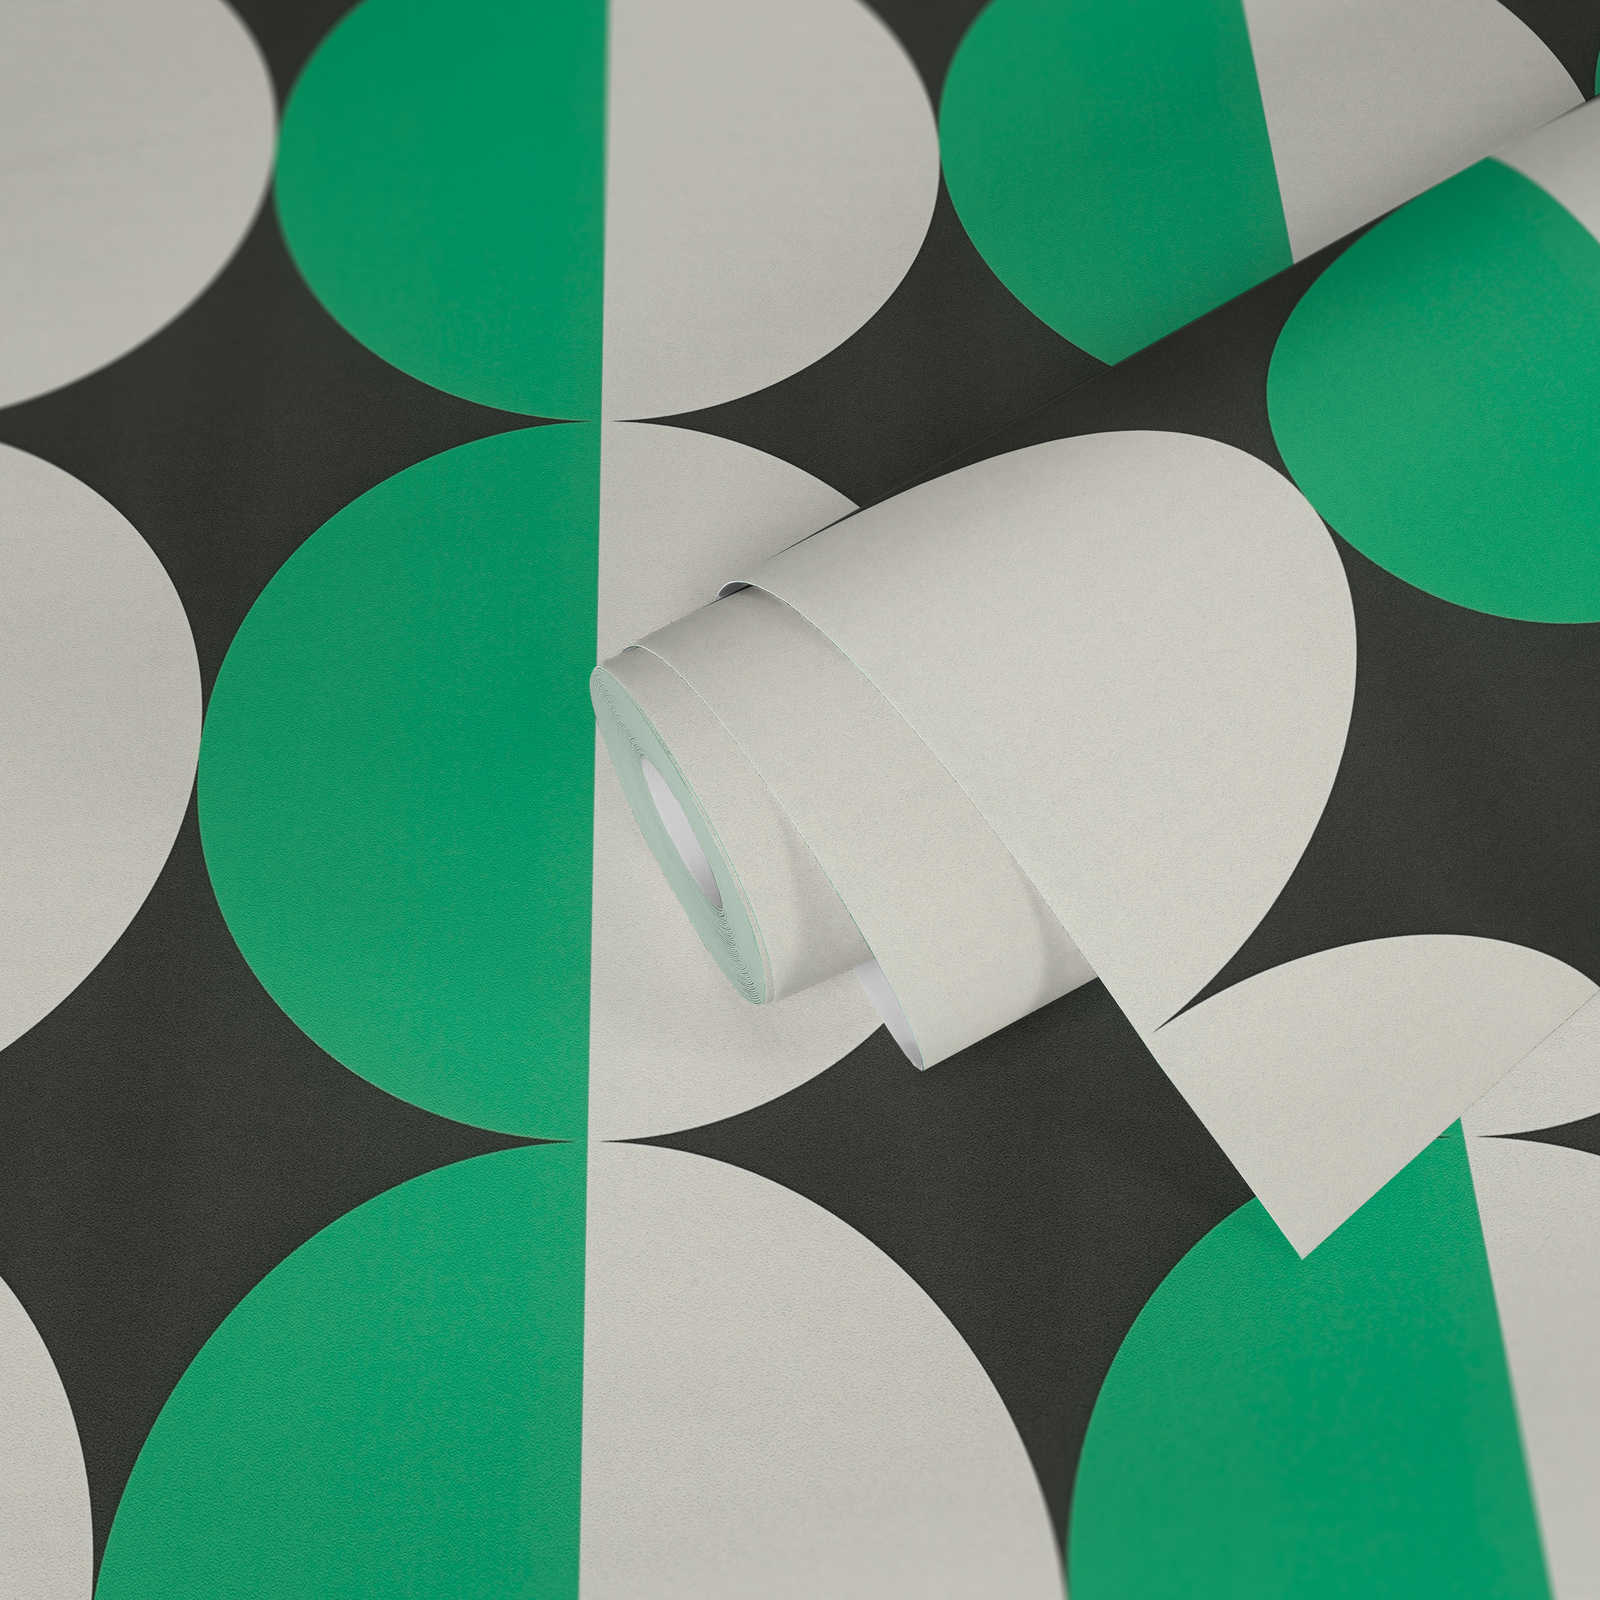             Papier peint intissé à motifs circulaires, style rétro années 70 - vert, blanc, noir
        